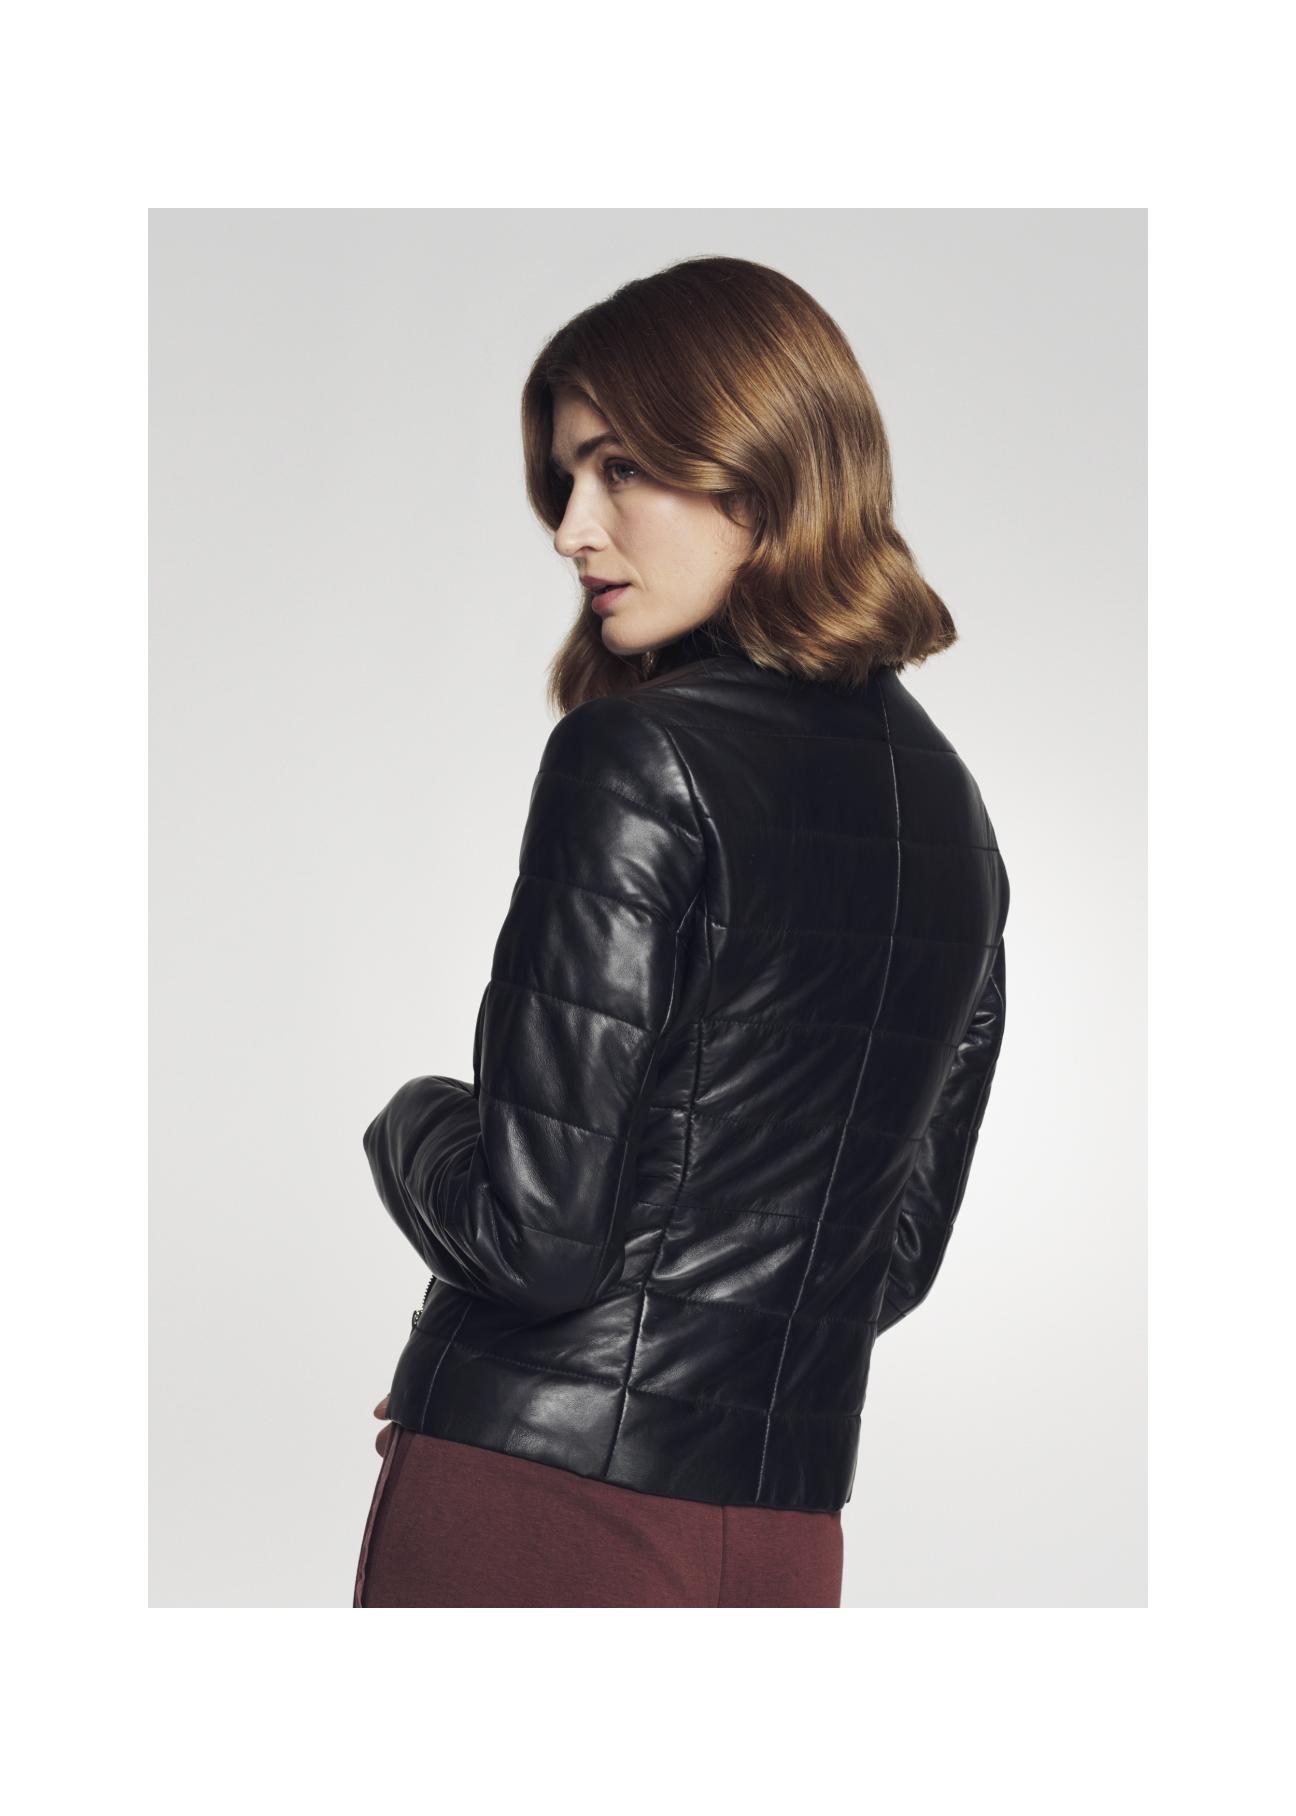 Skórzana kurtka damska w czarnym kolorze KURDS-0311-5339(Z21)